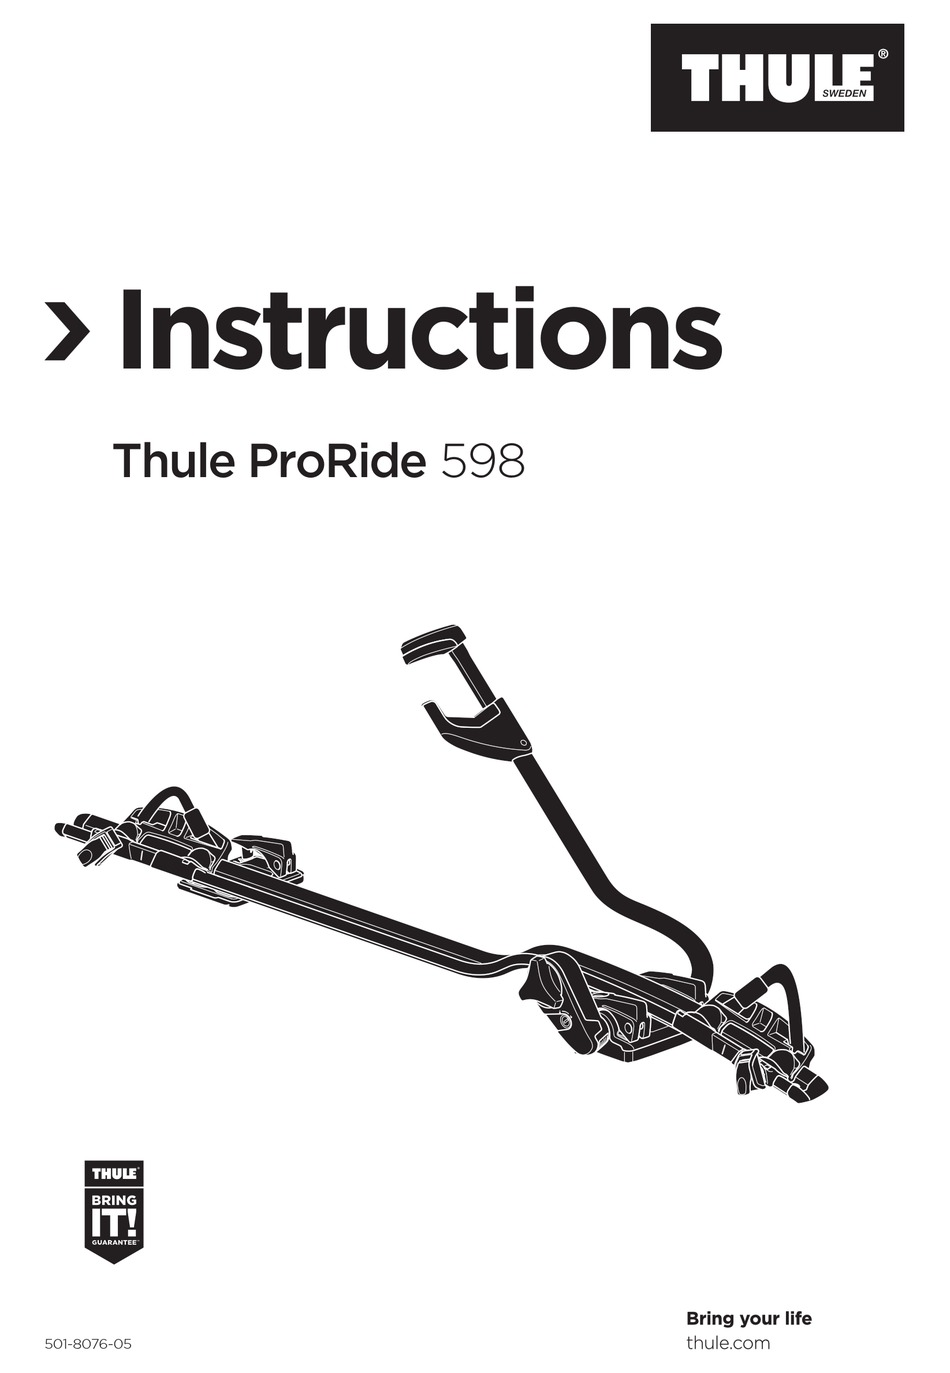 thule proride 598001